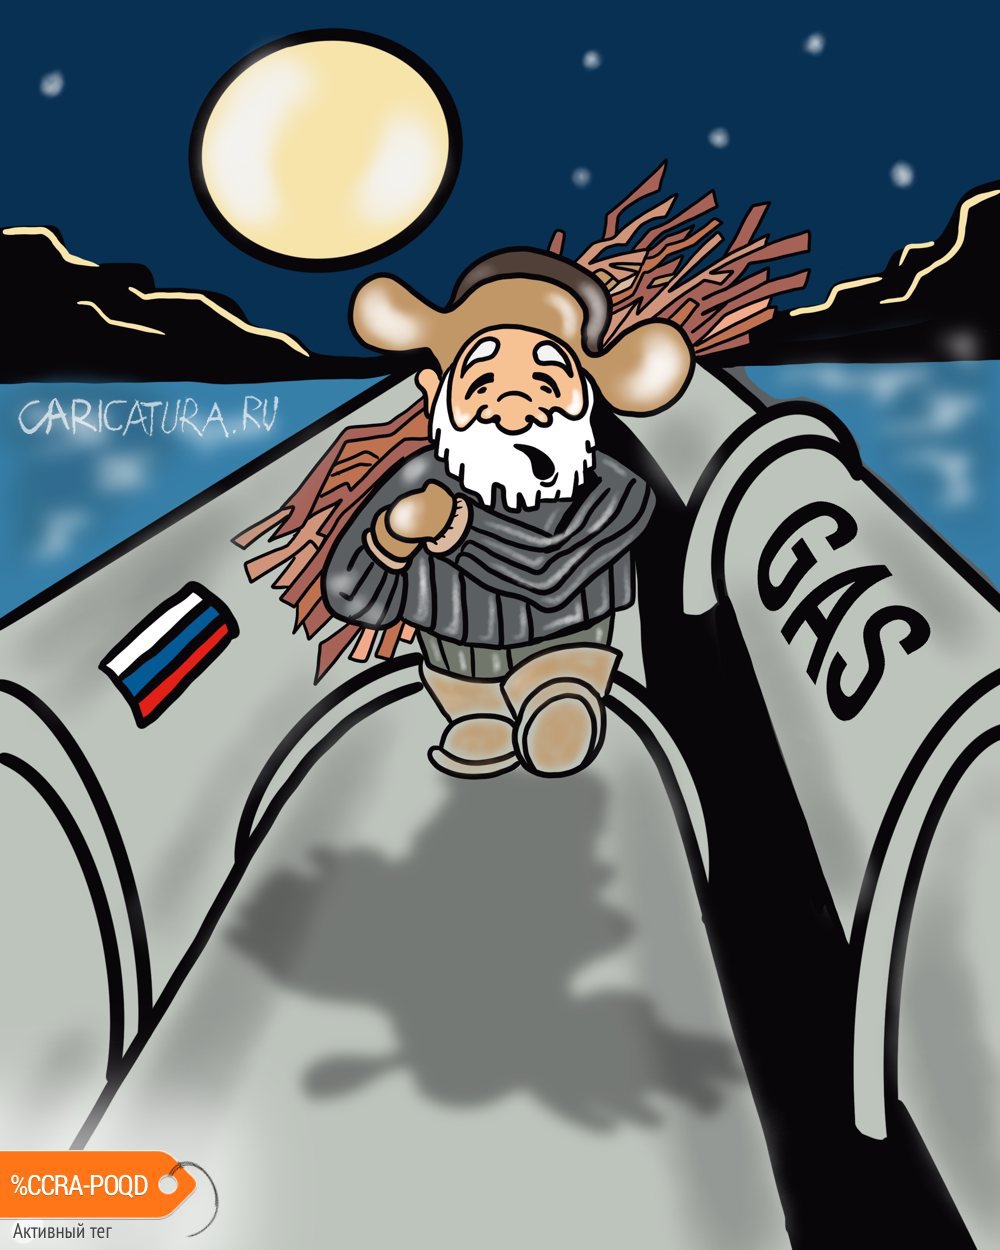 Карикатура "Сила Сибири", Алексей Корякин